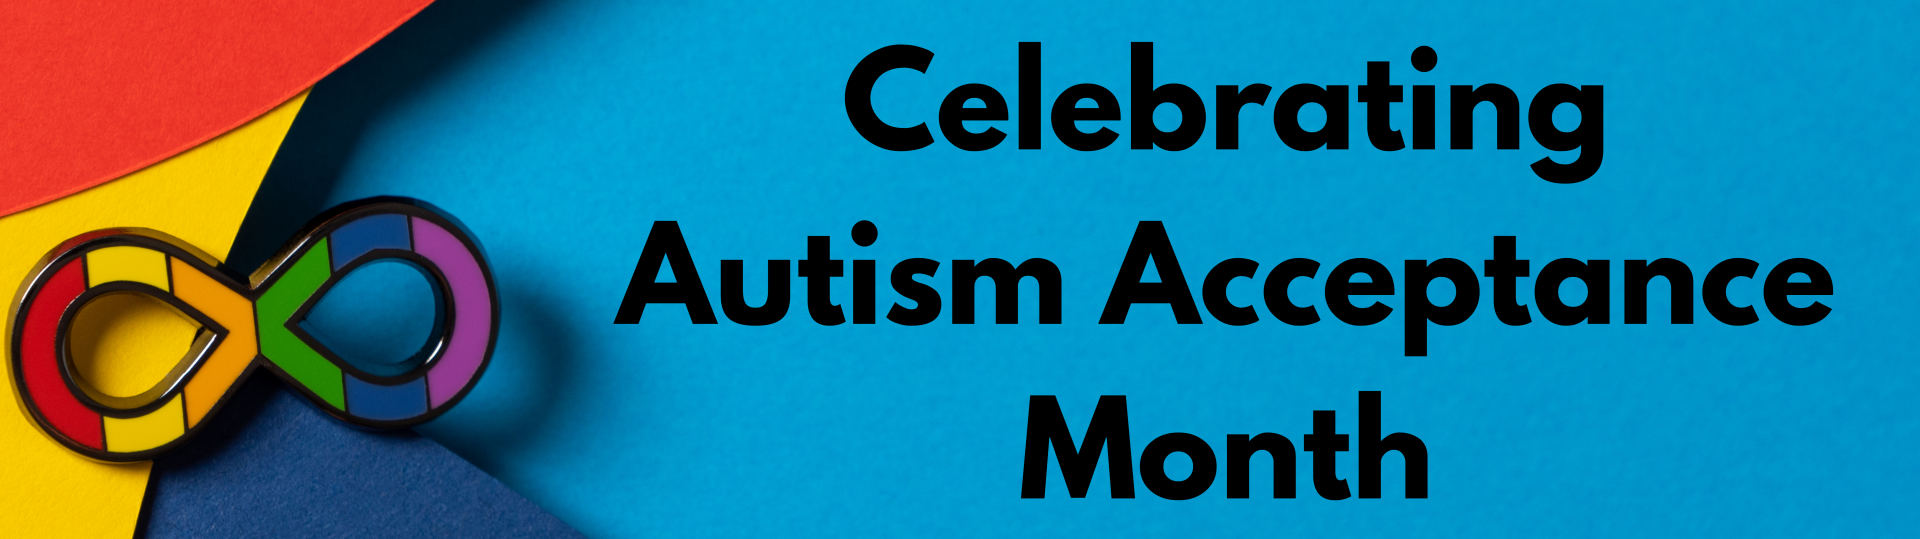 Celebrating Autism Acceptance Month